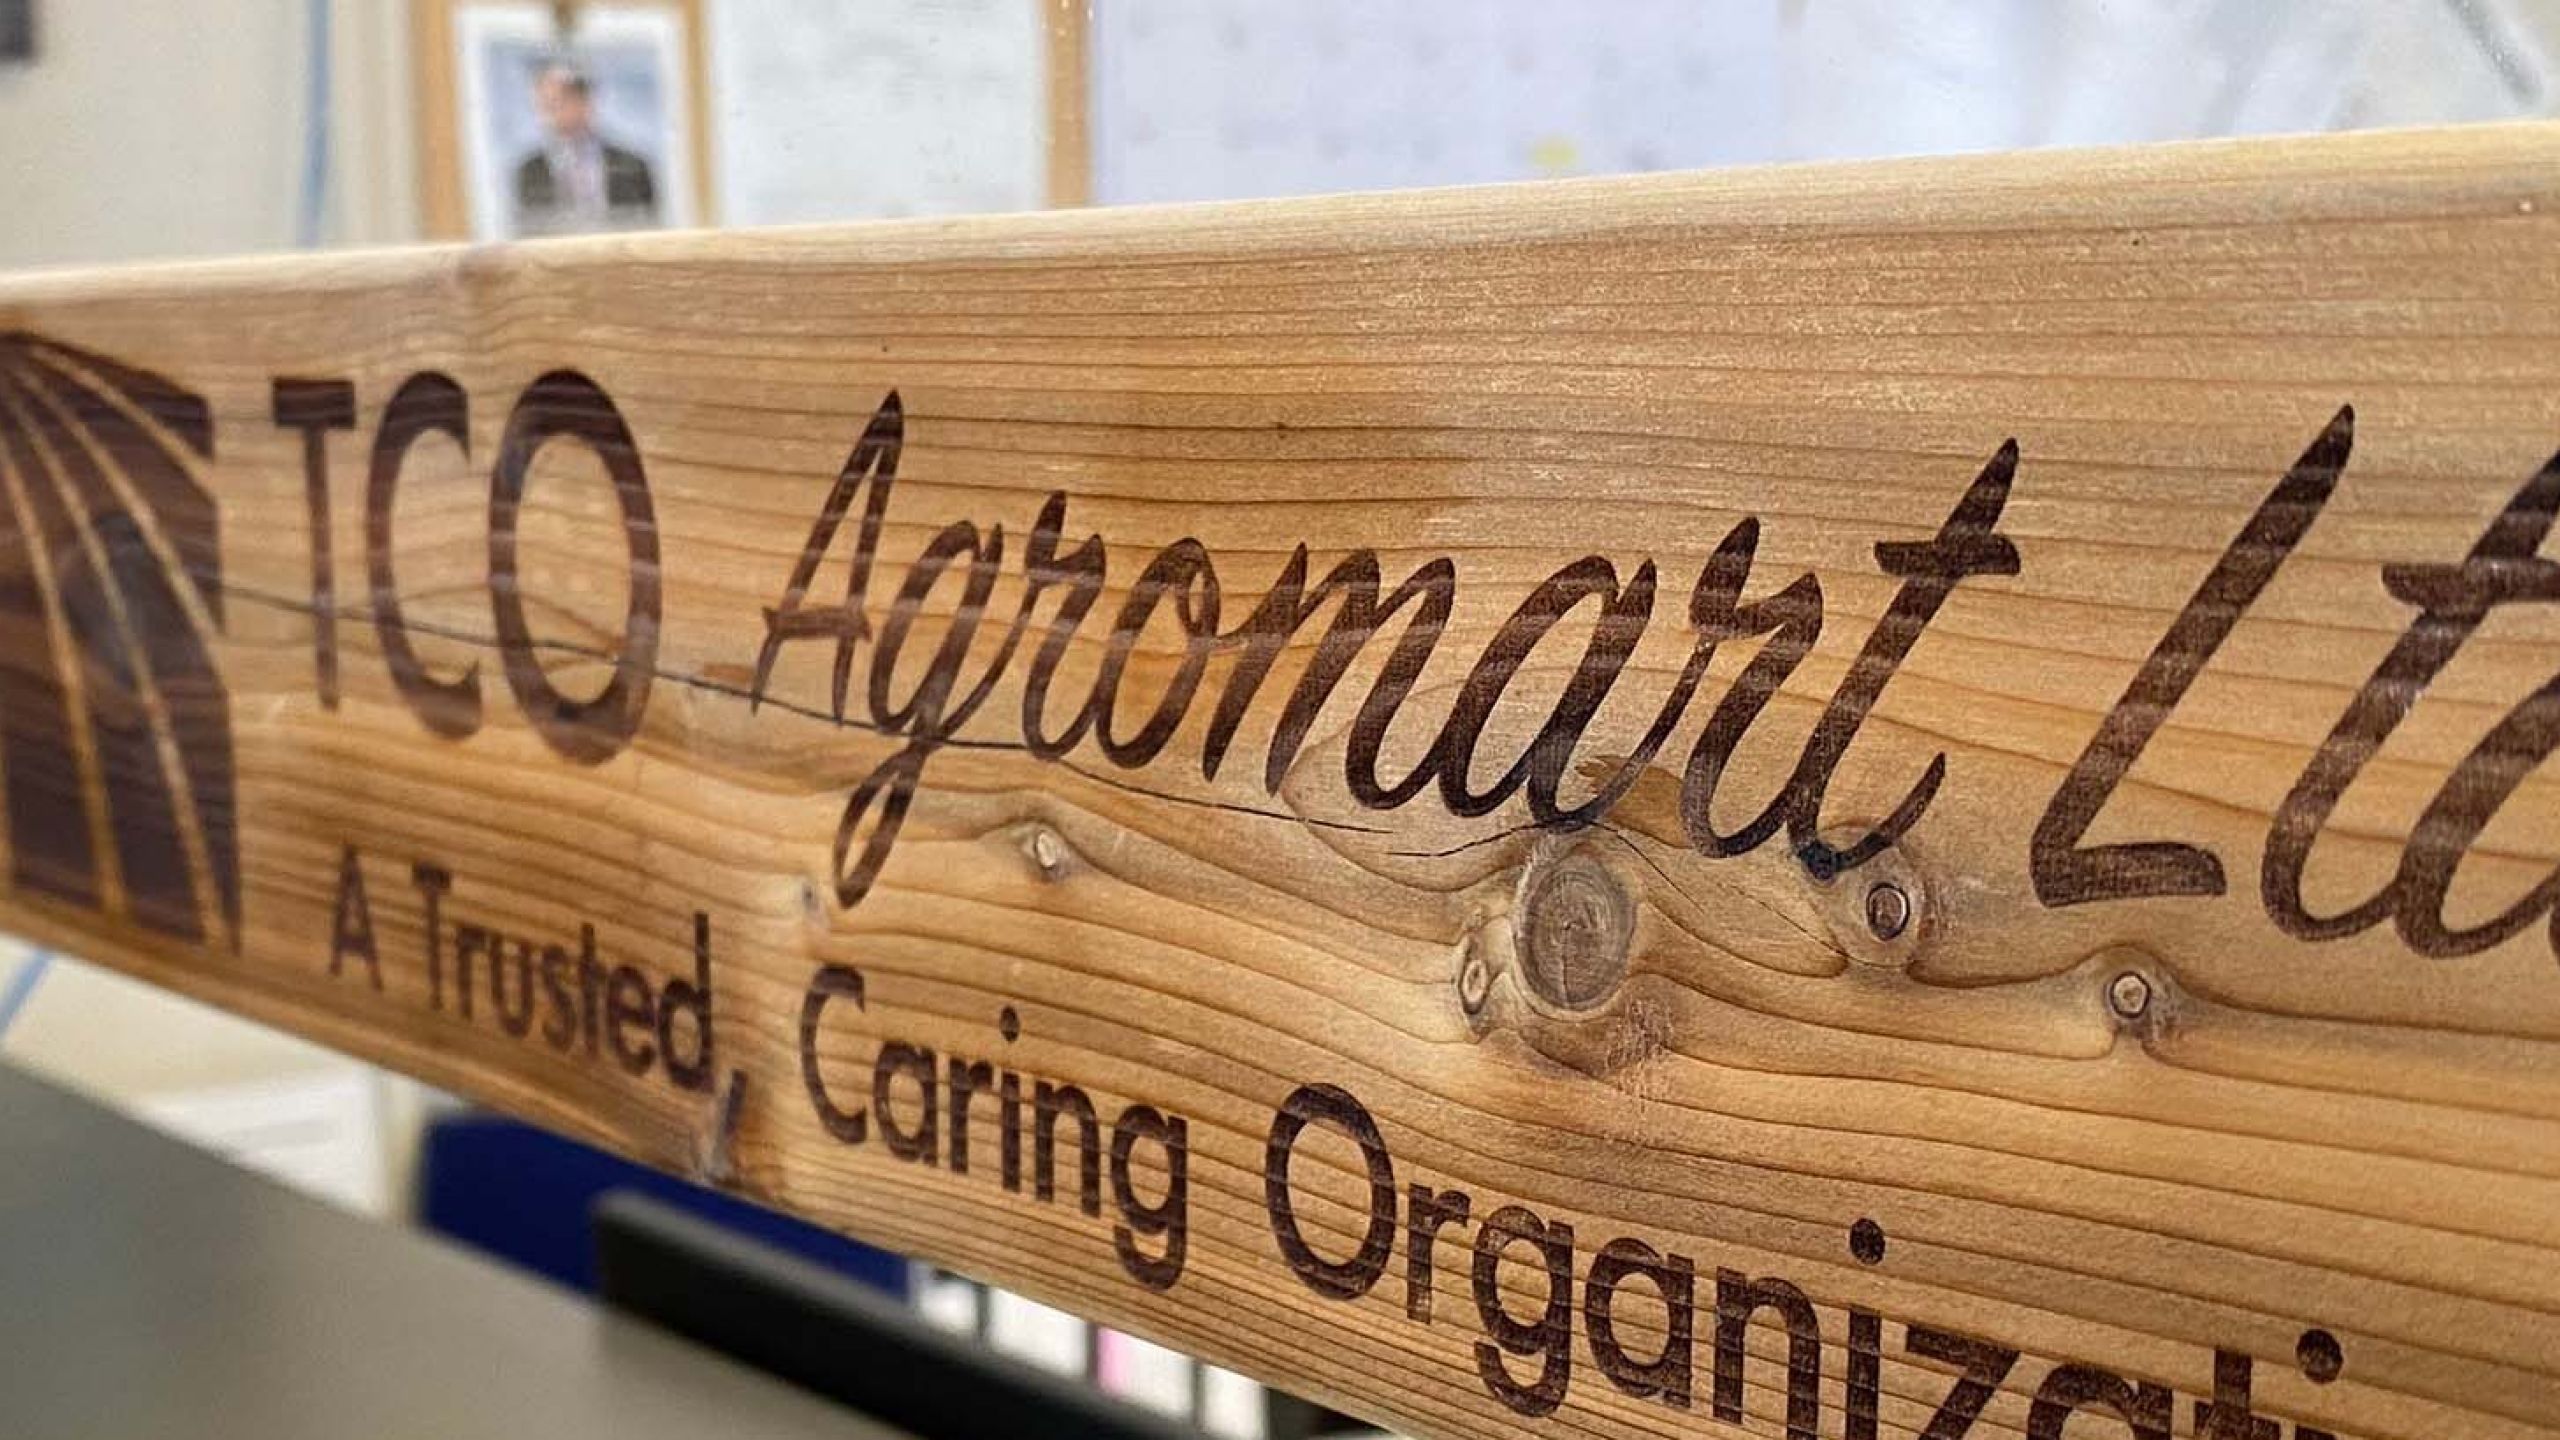 wood sign displaying TCO agromart logo